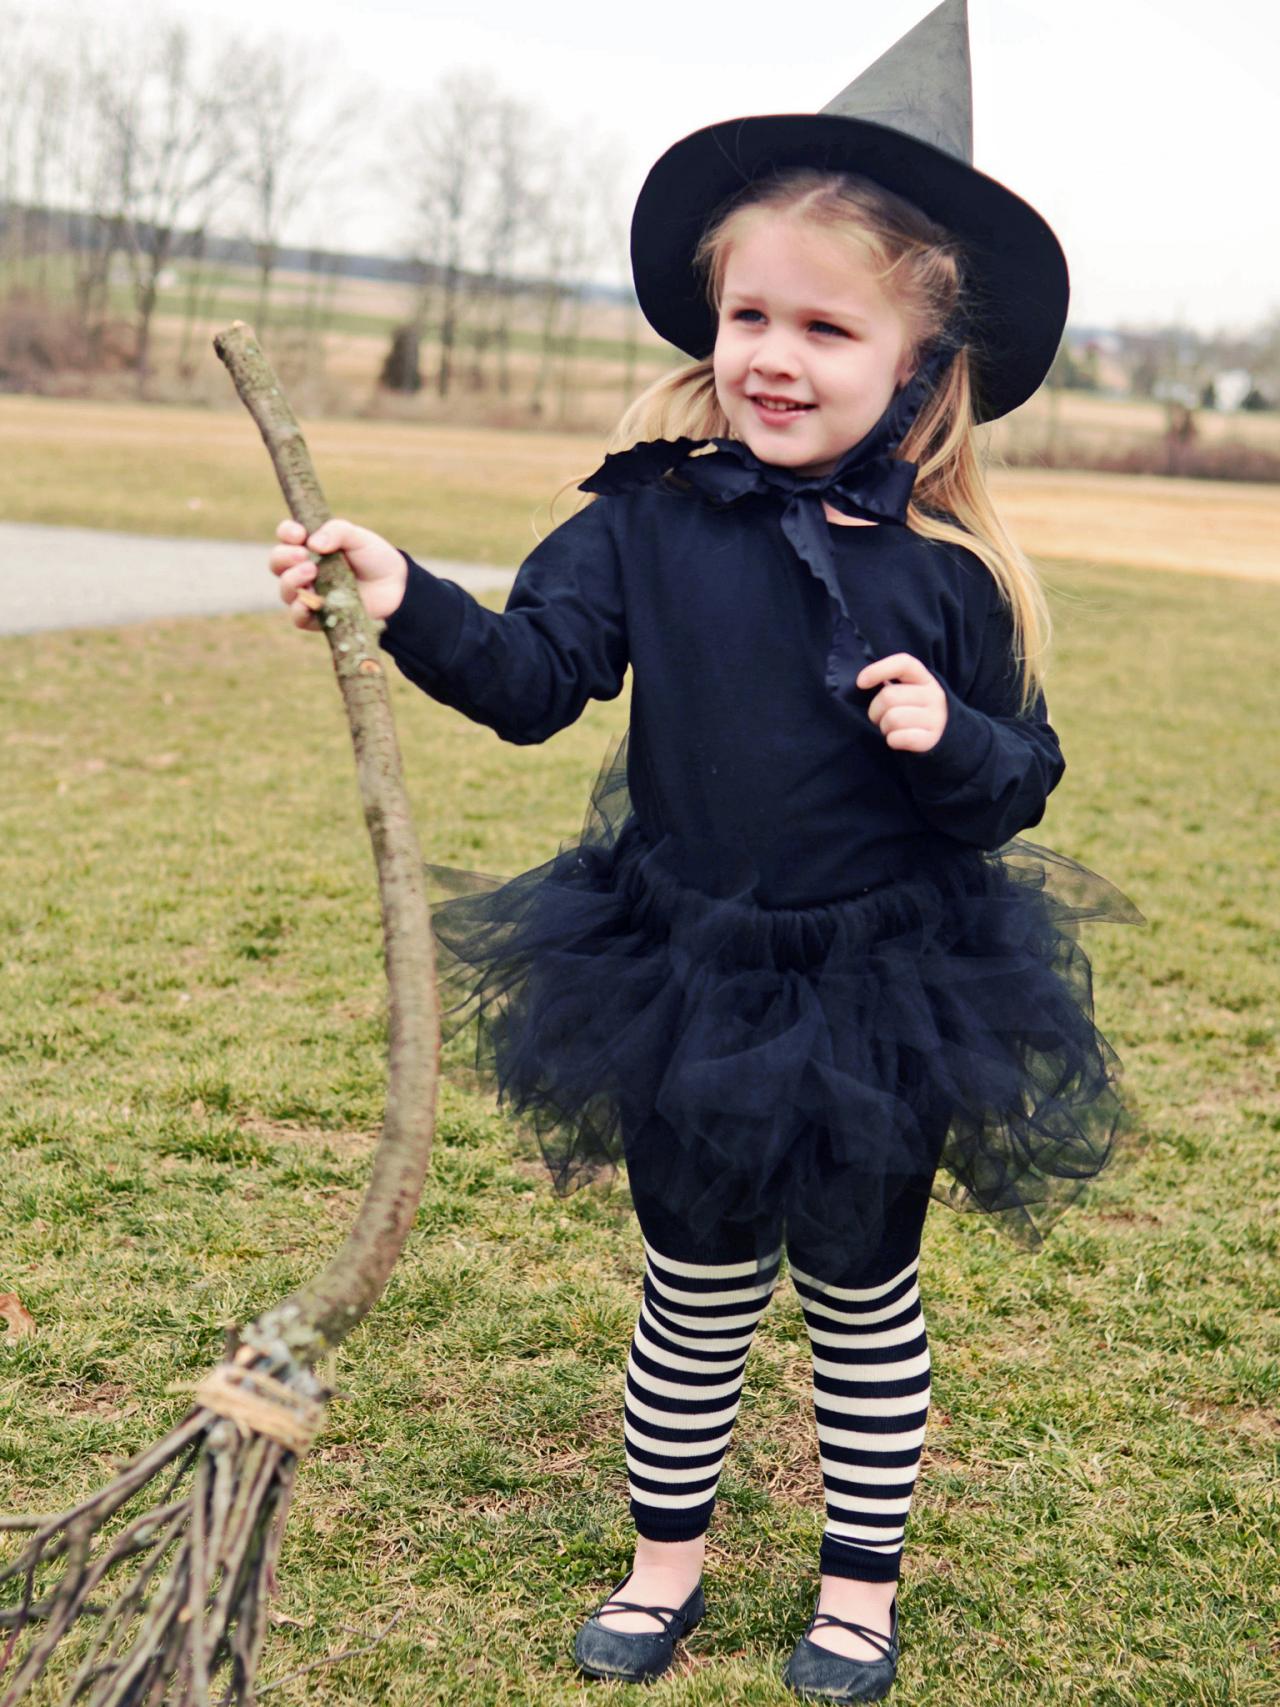 しておらず [送料無料] Way To Celebrate Curved Witch Hat Costume Accessory.女性ブラック ...